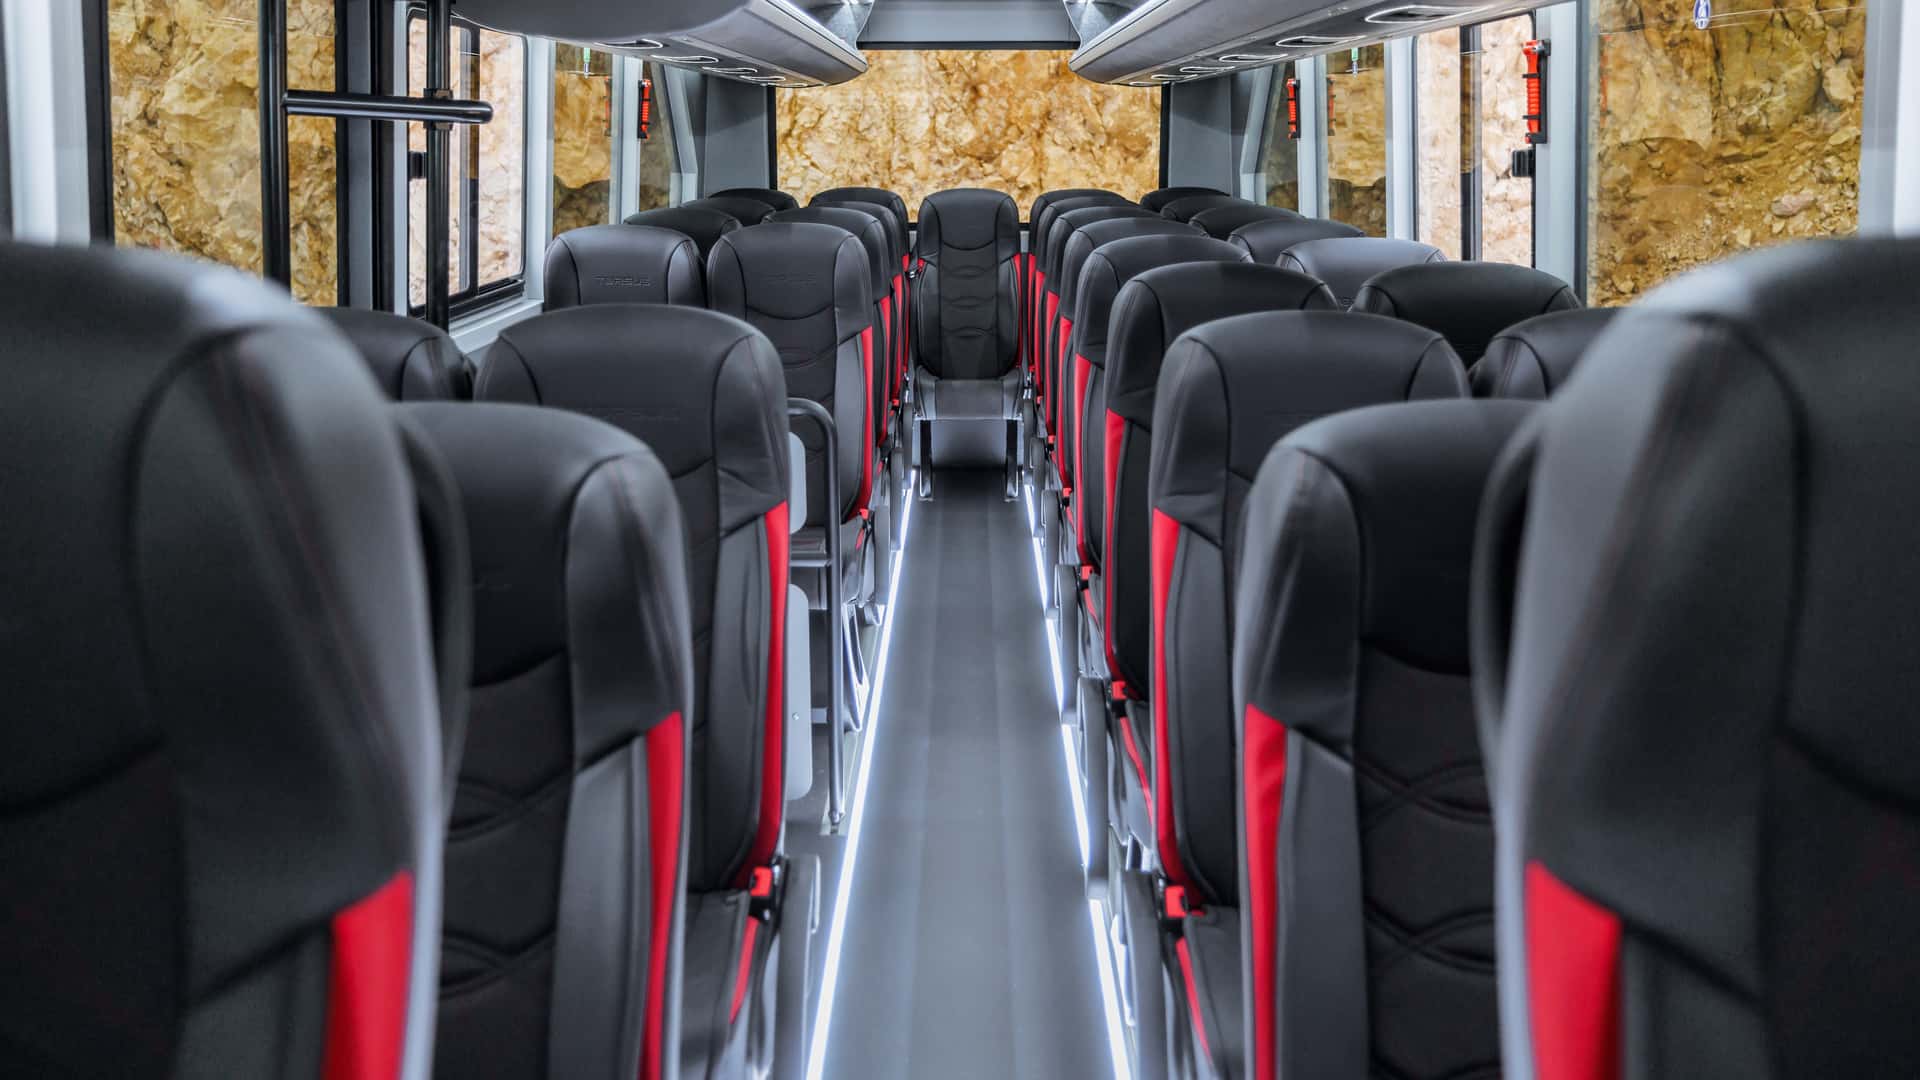 Xe buýt địa hình 35 chỗ ngồi, giá 243.000 USD- Ảnh 3.